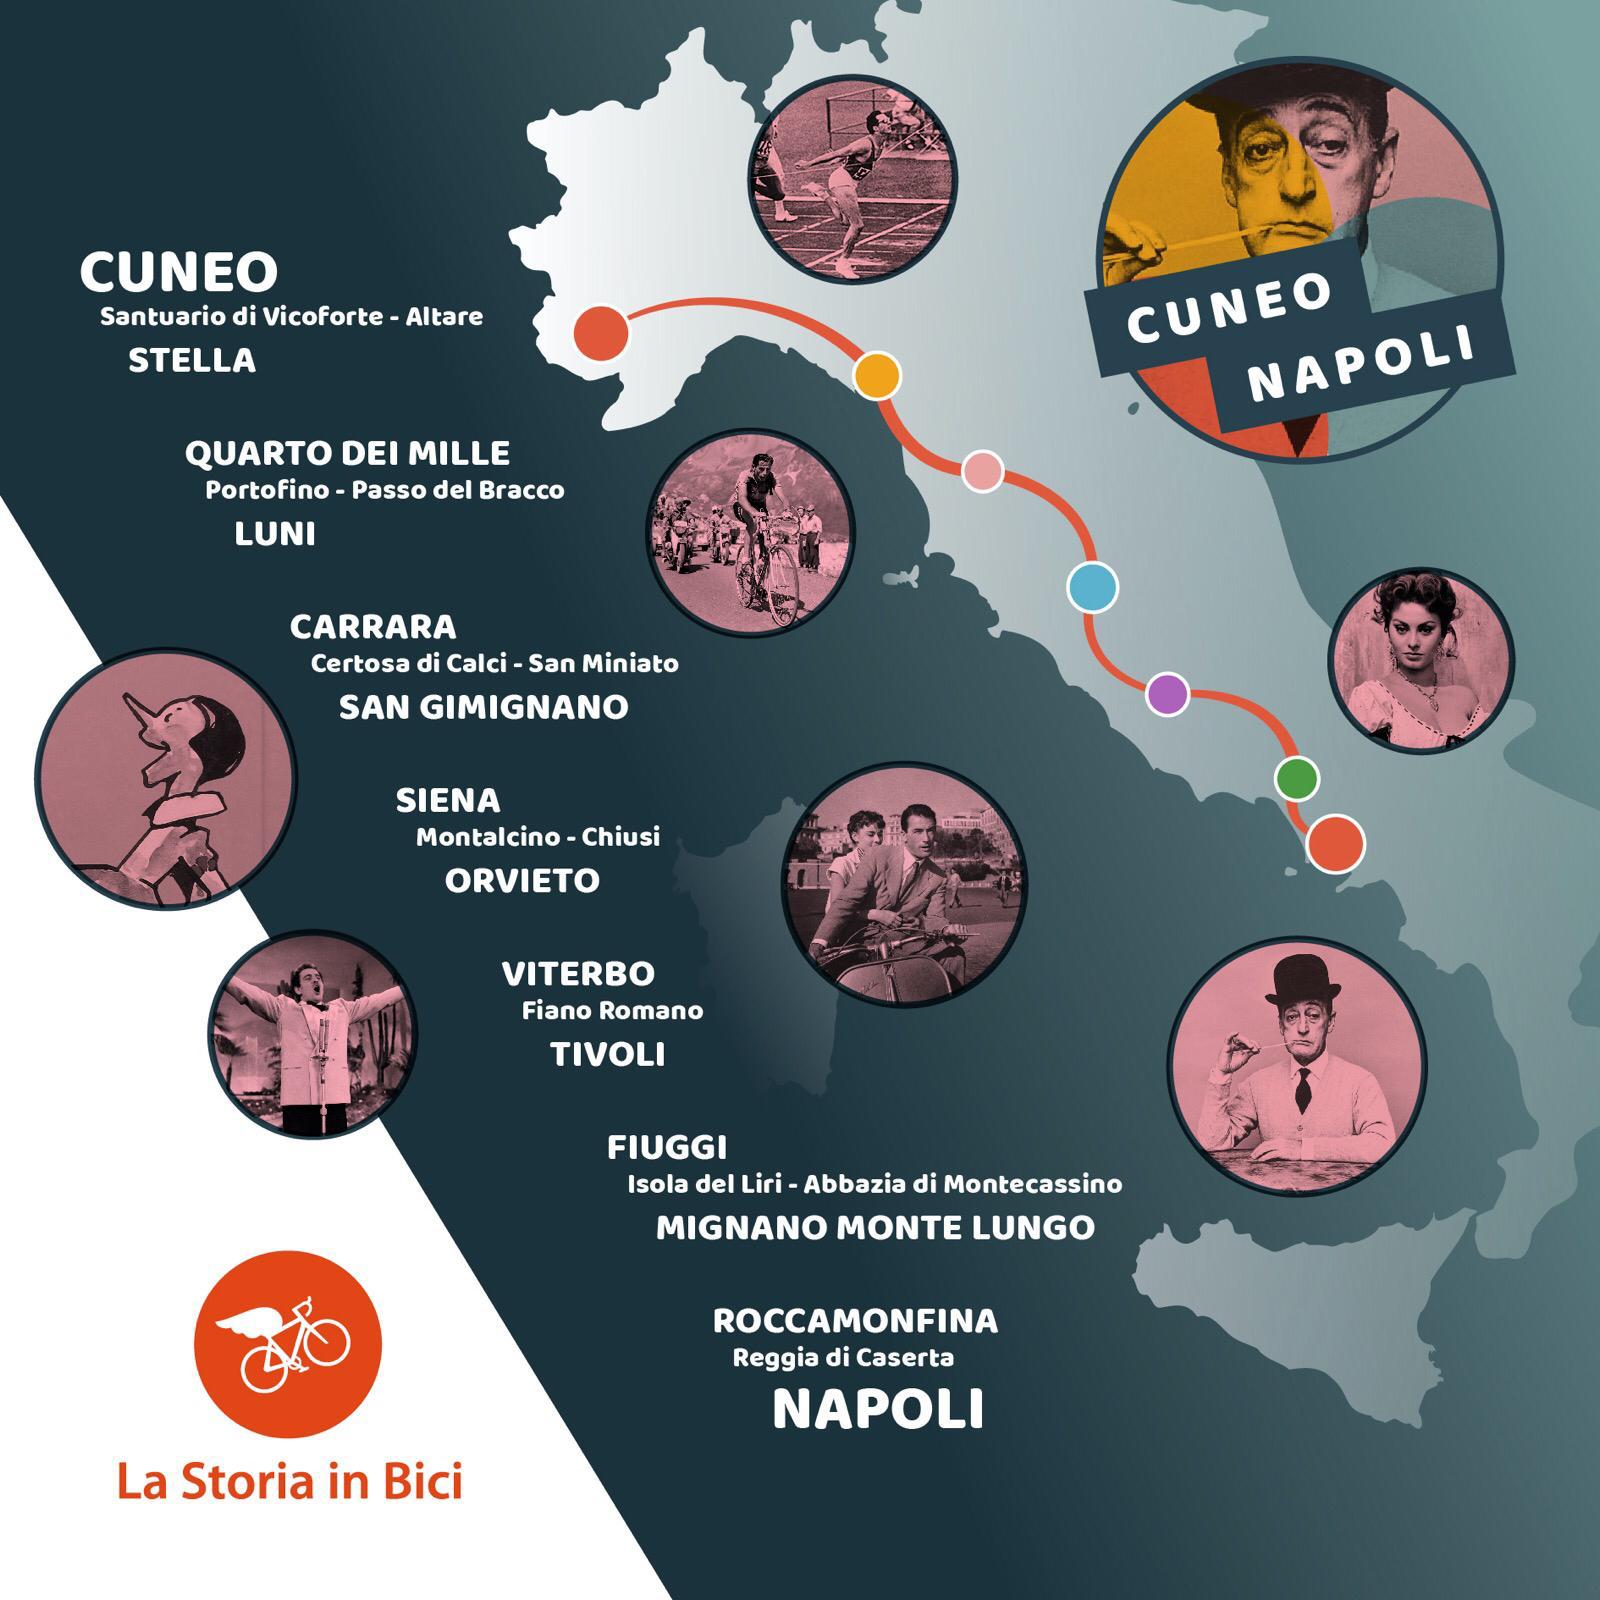 La Storia in bici: Cuneo - Napoli